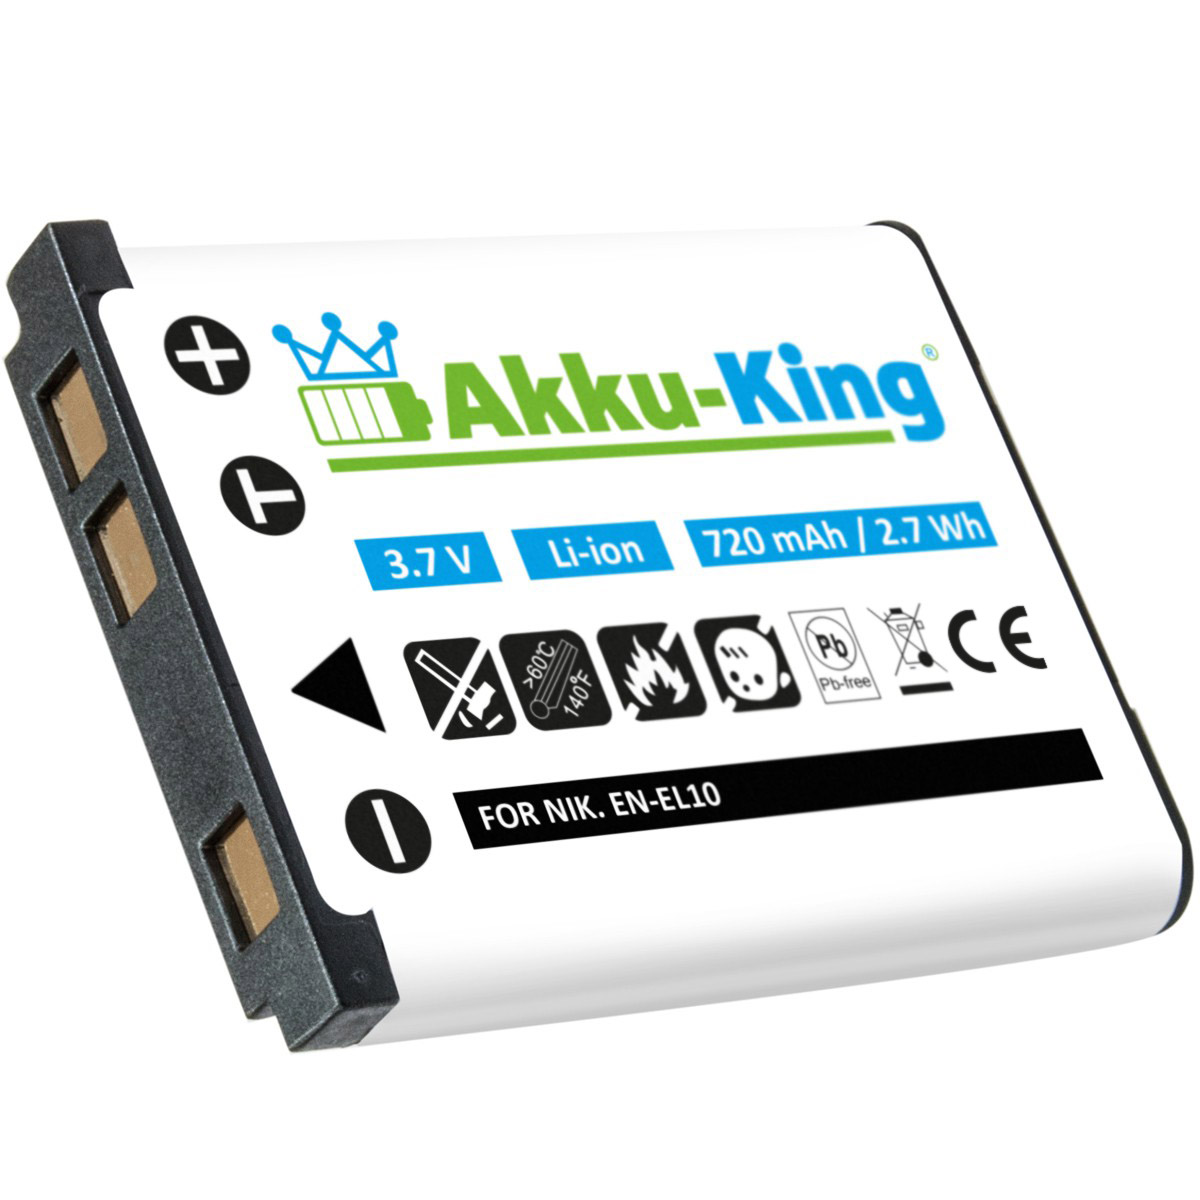 kompatibel Kamera-Akku, Volt, Li-Ion 720mAh DS-5370 mit Traveler 3.7 AKKU-KING Akku